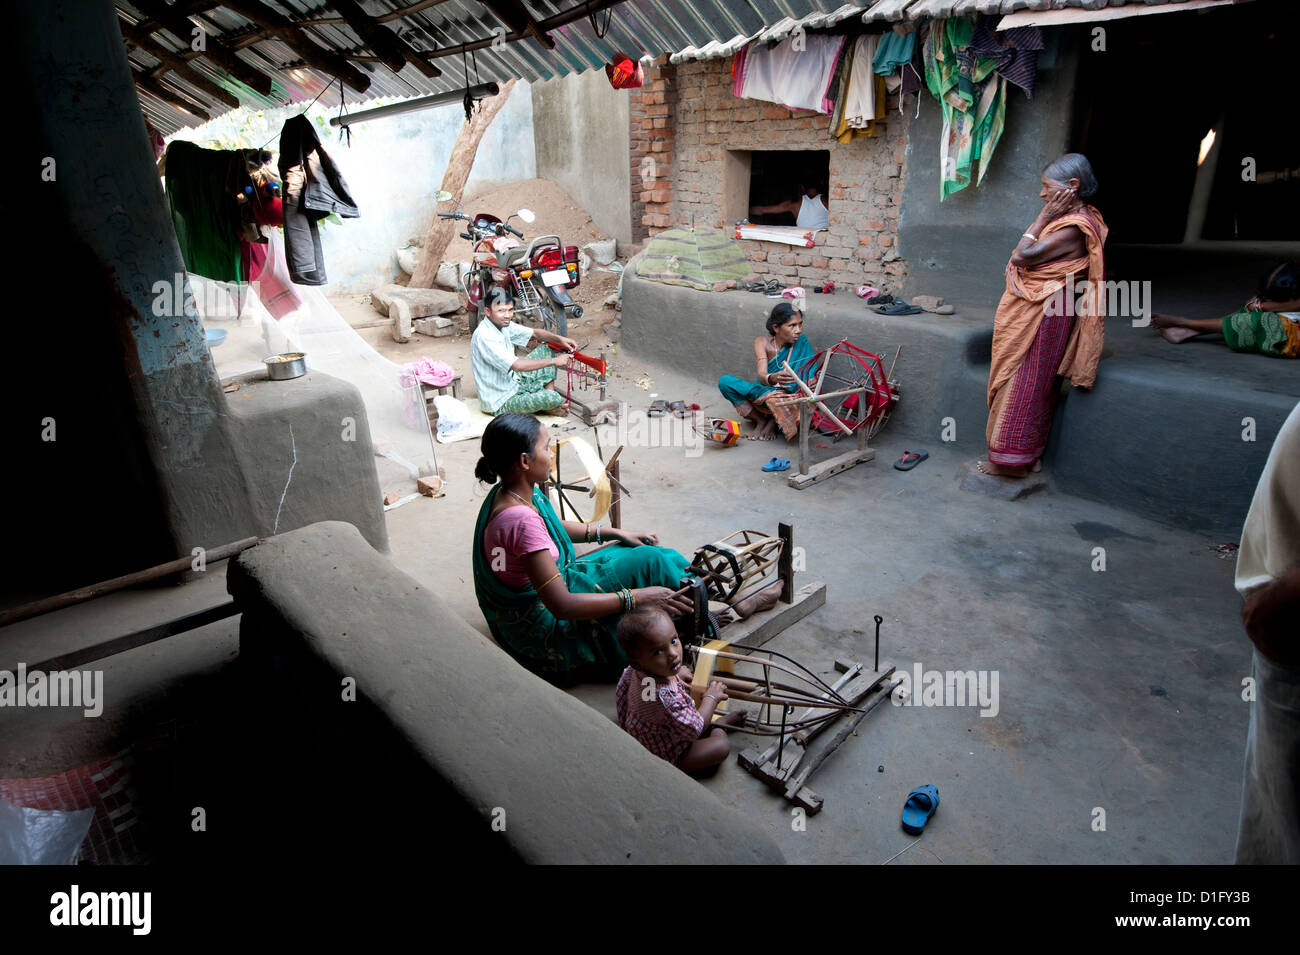 Les femmes dans les parties communes de l'arrière-cour du village de tissage, de filage, tissage de fils de soie Vaidyanathpur village, Orissa, Inde Banque D'Images